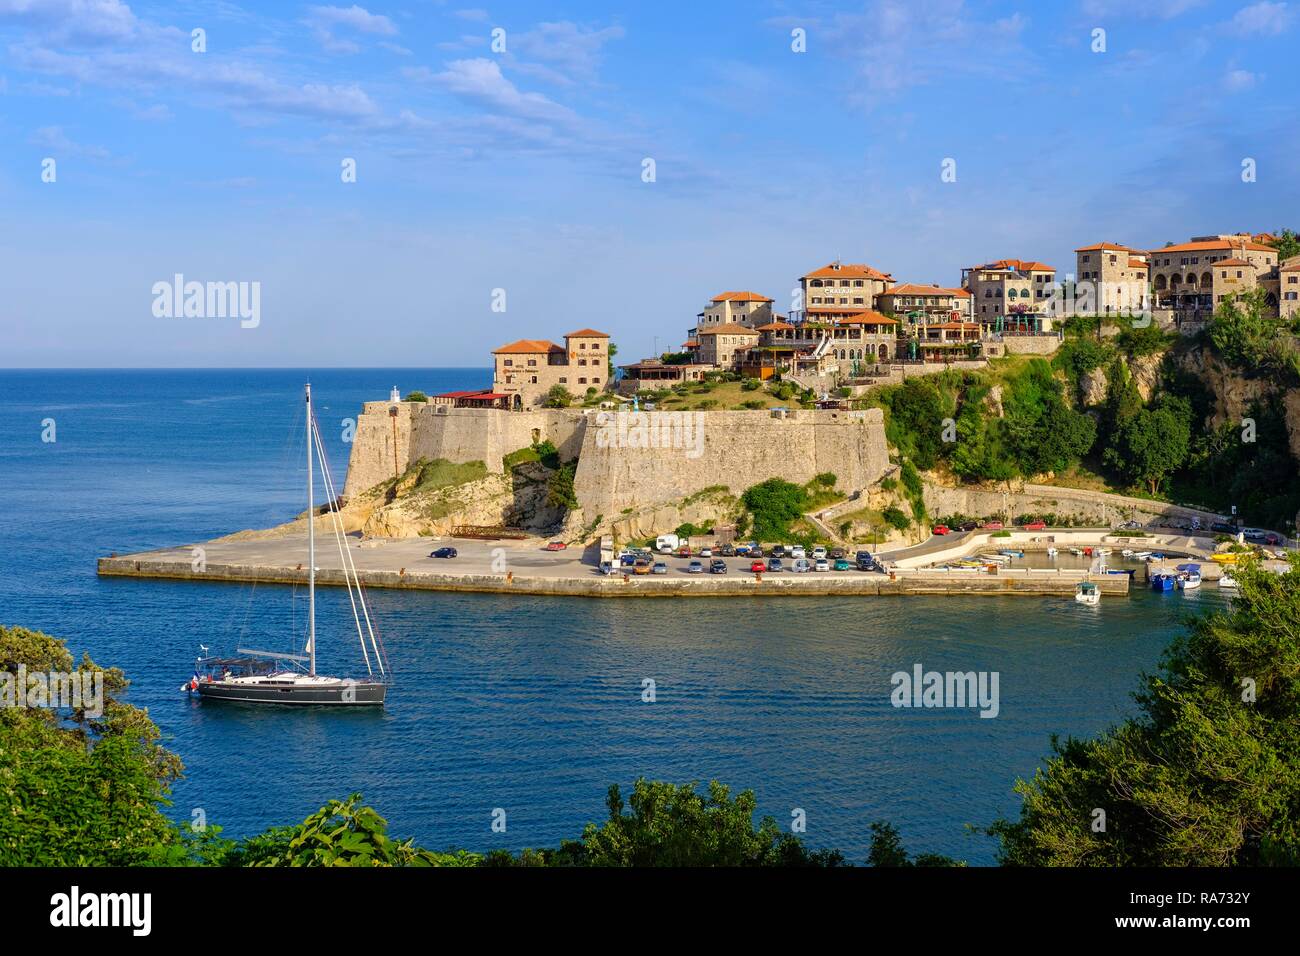 La città vecchia, Ulcinj, costa adriatica, Montenegro Foto Stock